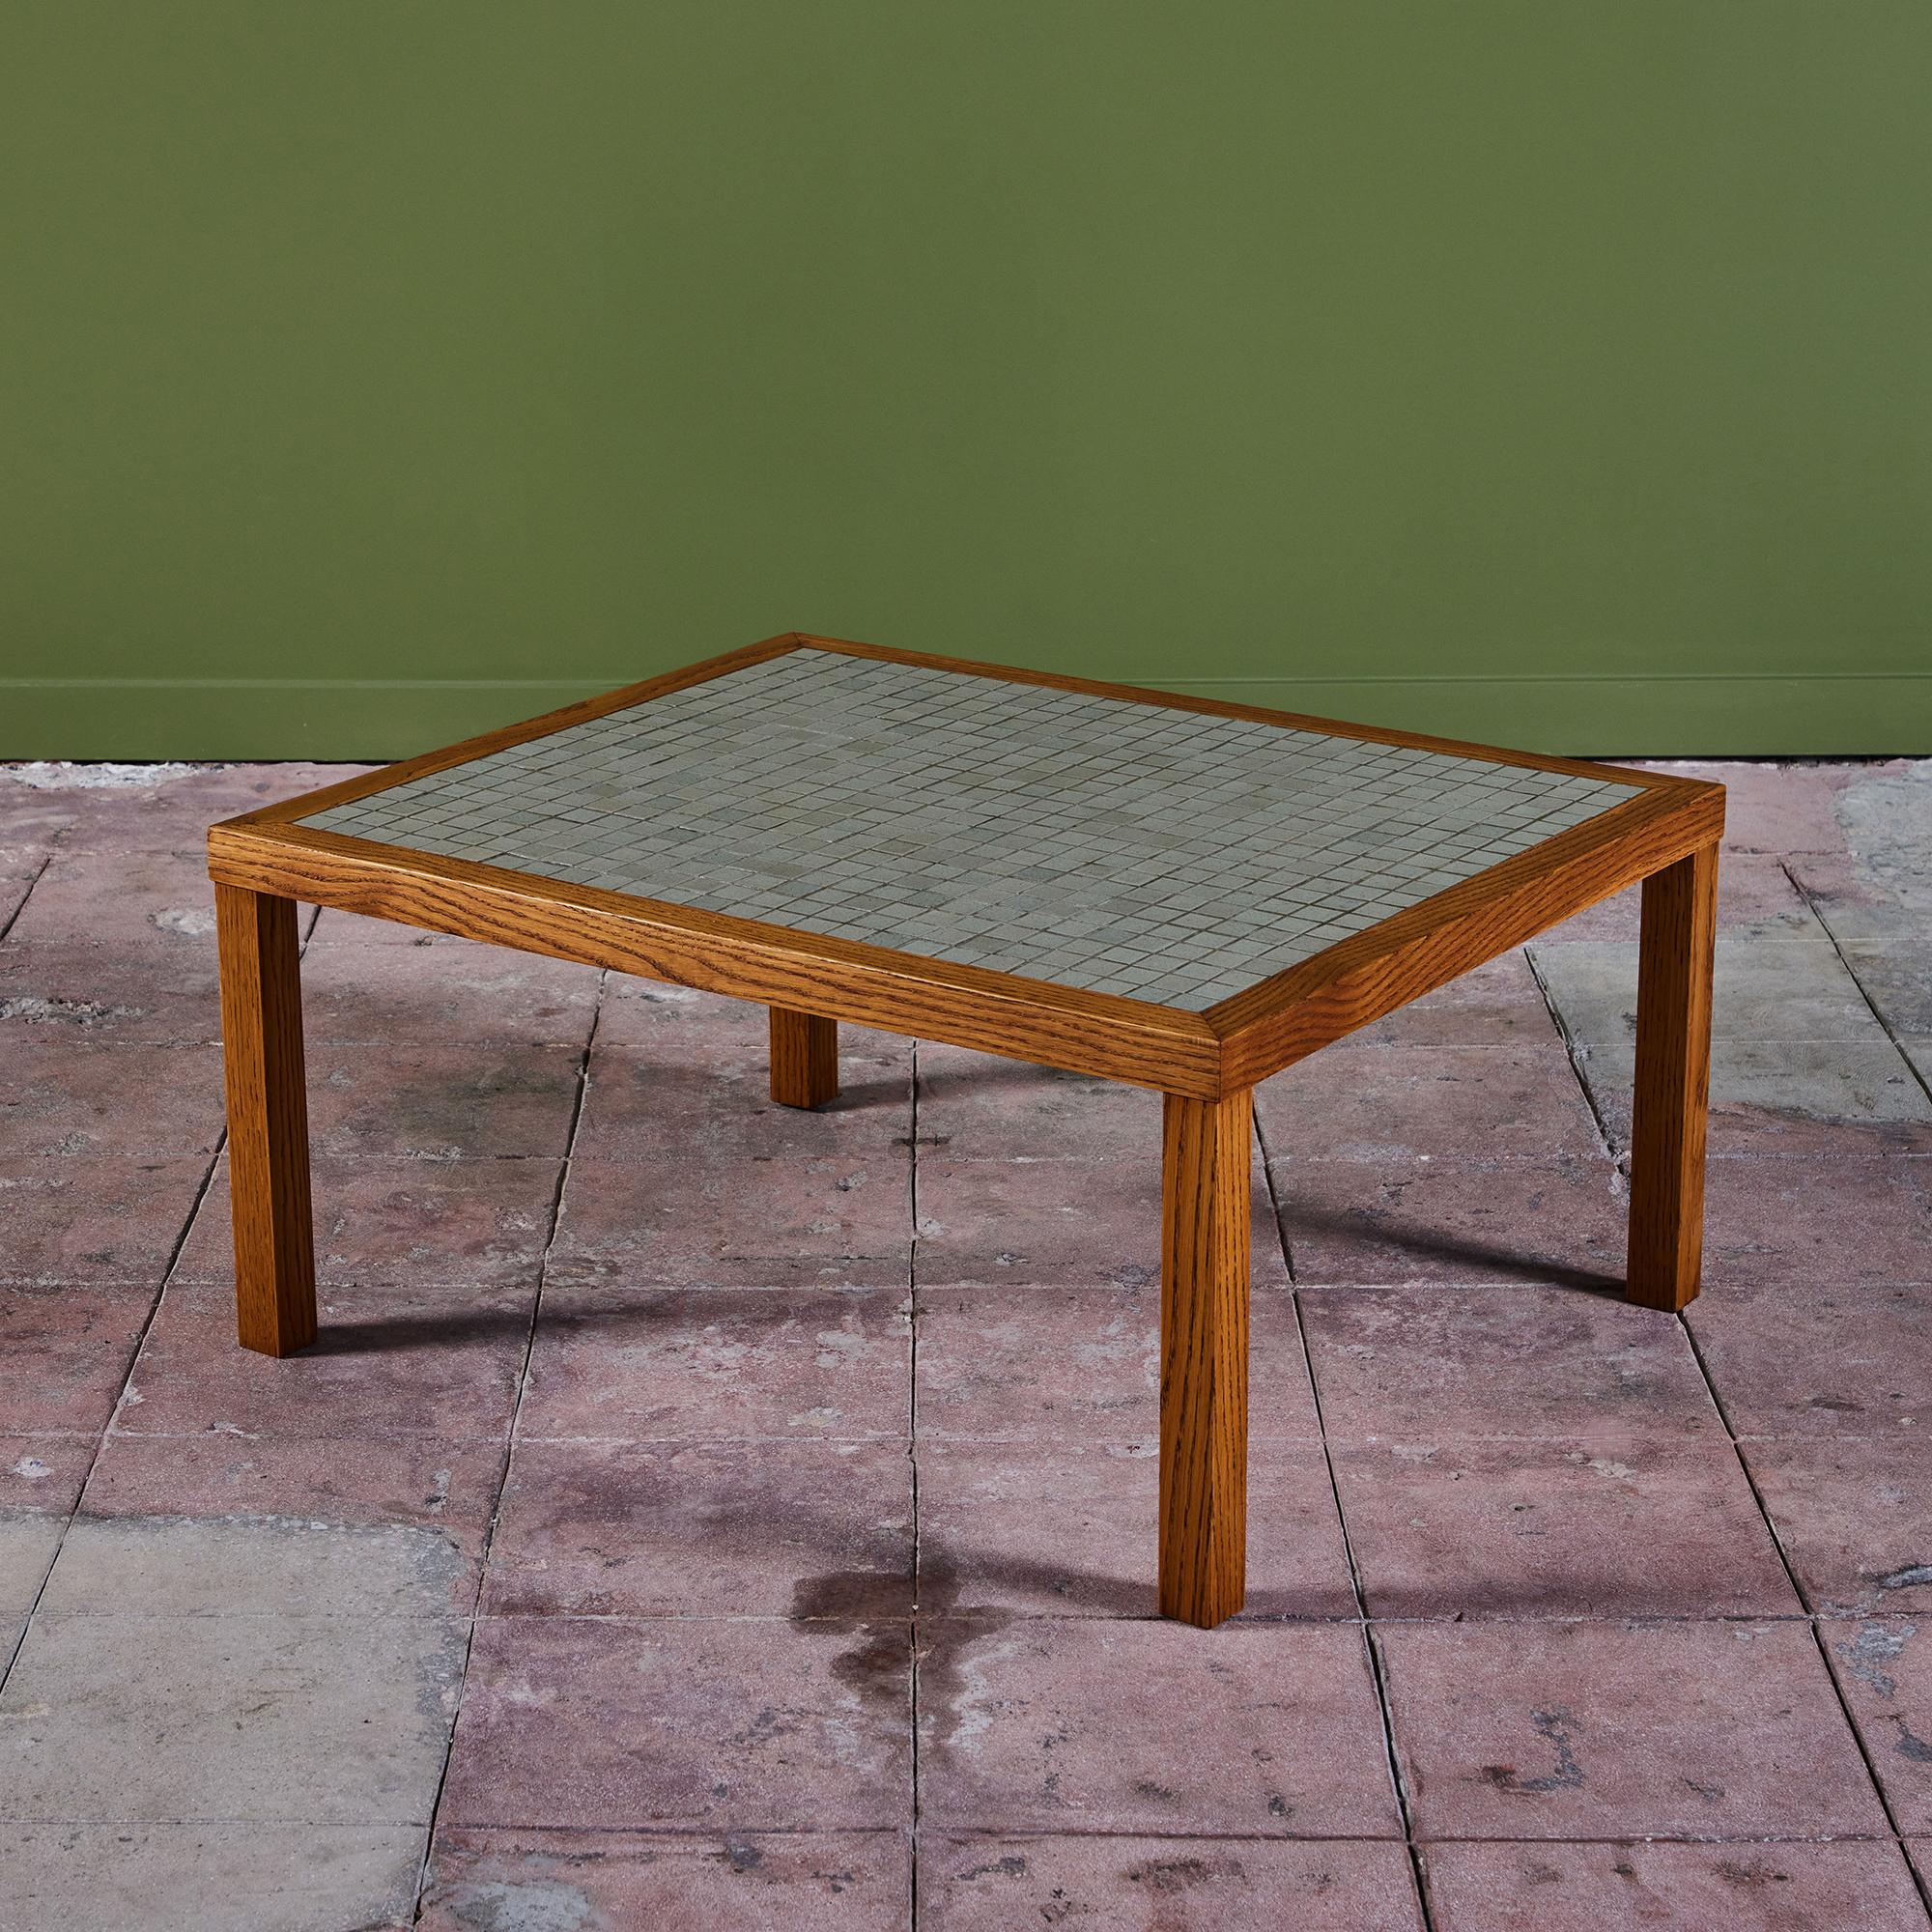 Rechteckiger Couchtisch von Gordon & Jane Martz. Die Tischplatte ist mit quadratischen Keramikfliesen in hellgrau gesprenkelt eingelegt. Der Rahmen des Tisches und die vier Beine sind aus massiver Eiche.

Abmessungen
36